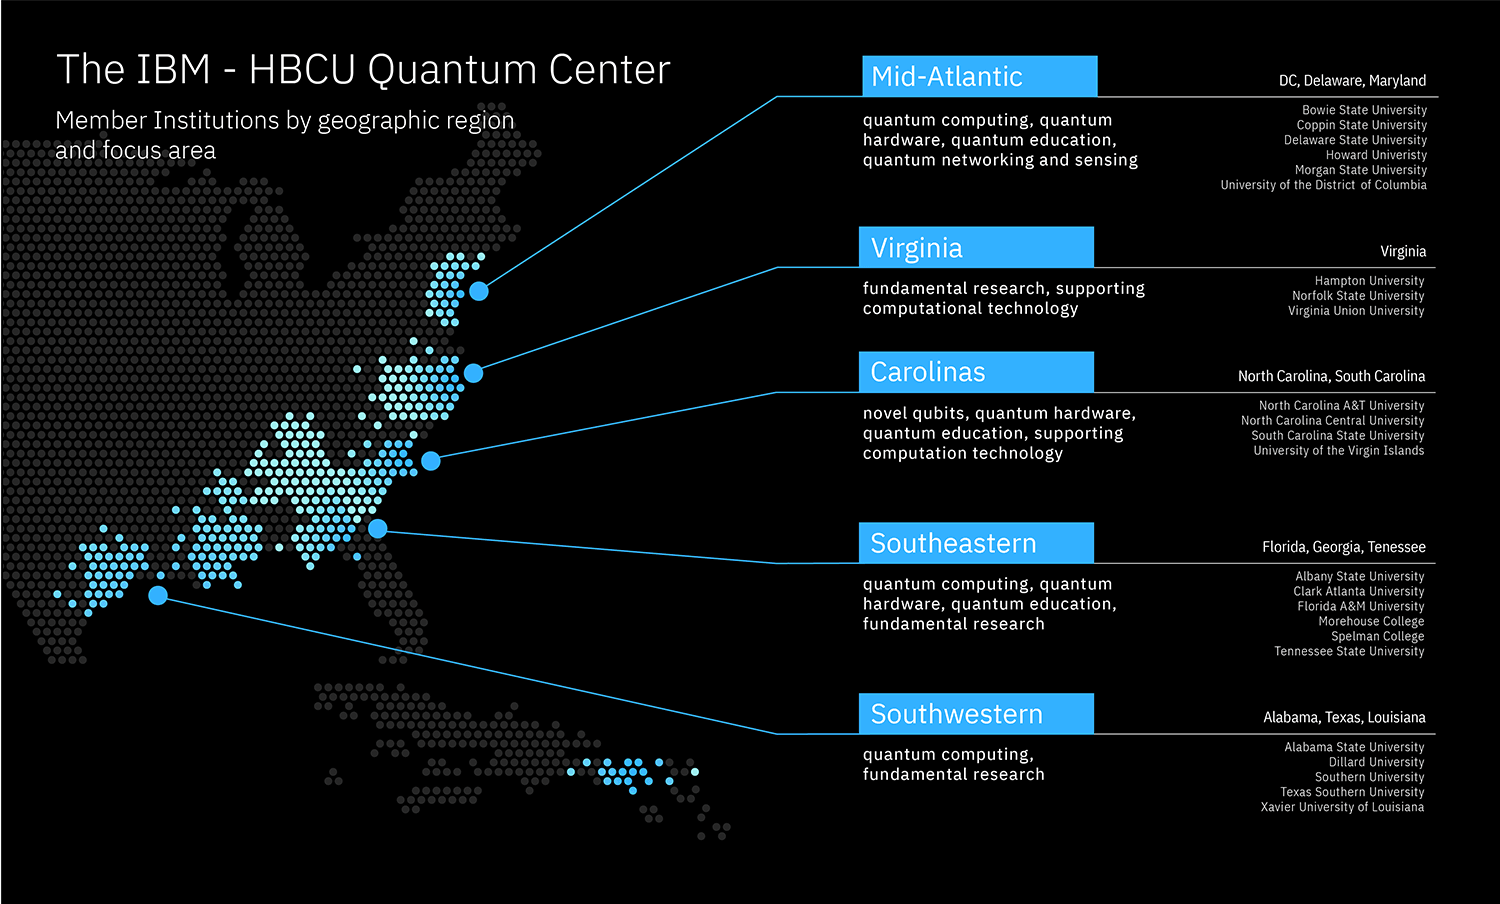 The IBM-HBCU Quantum Center Map